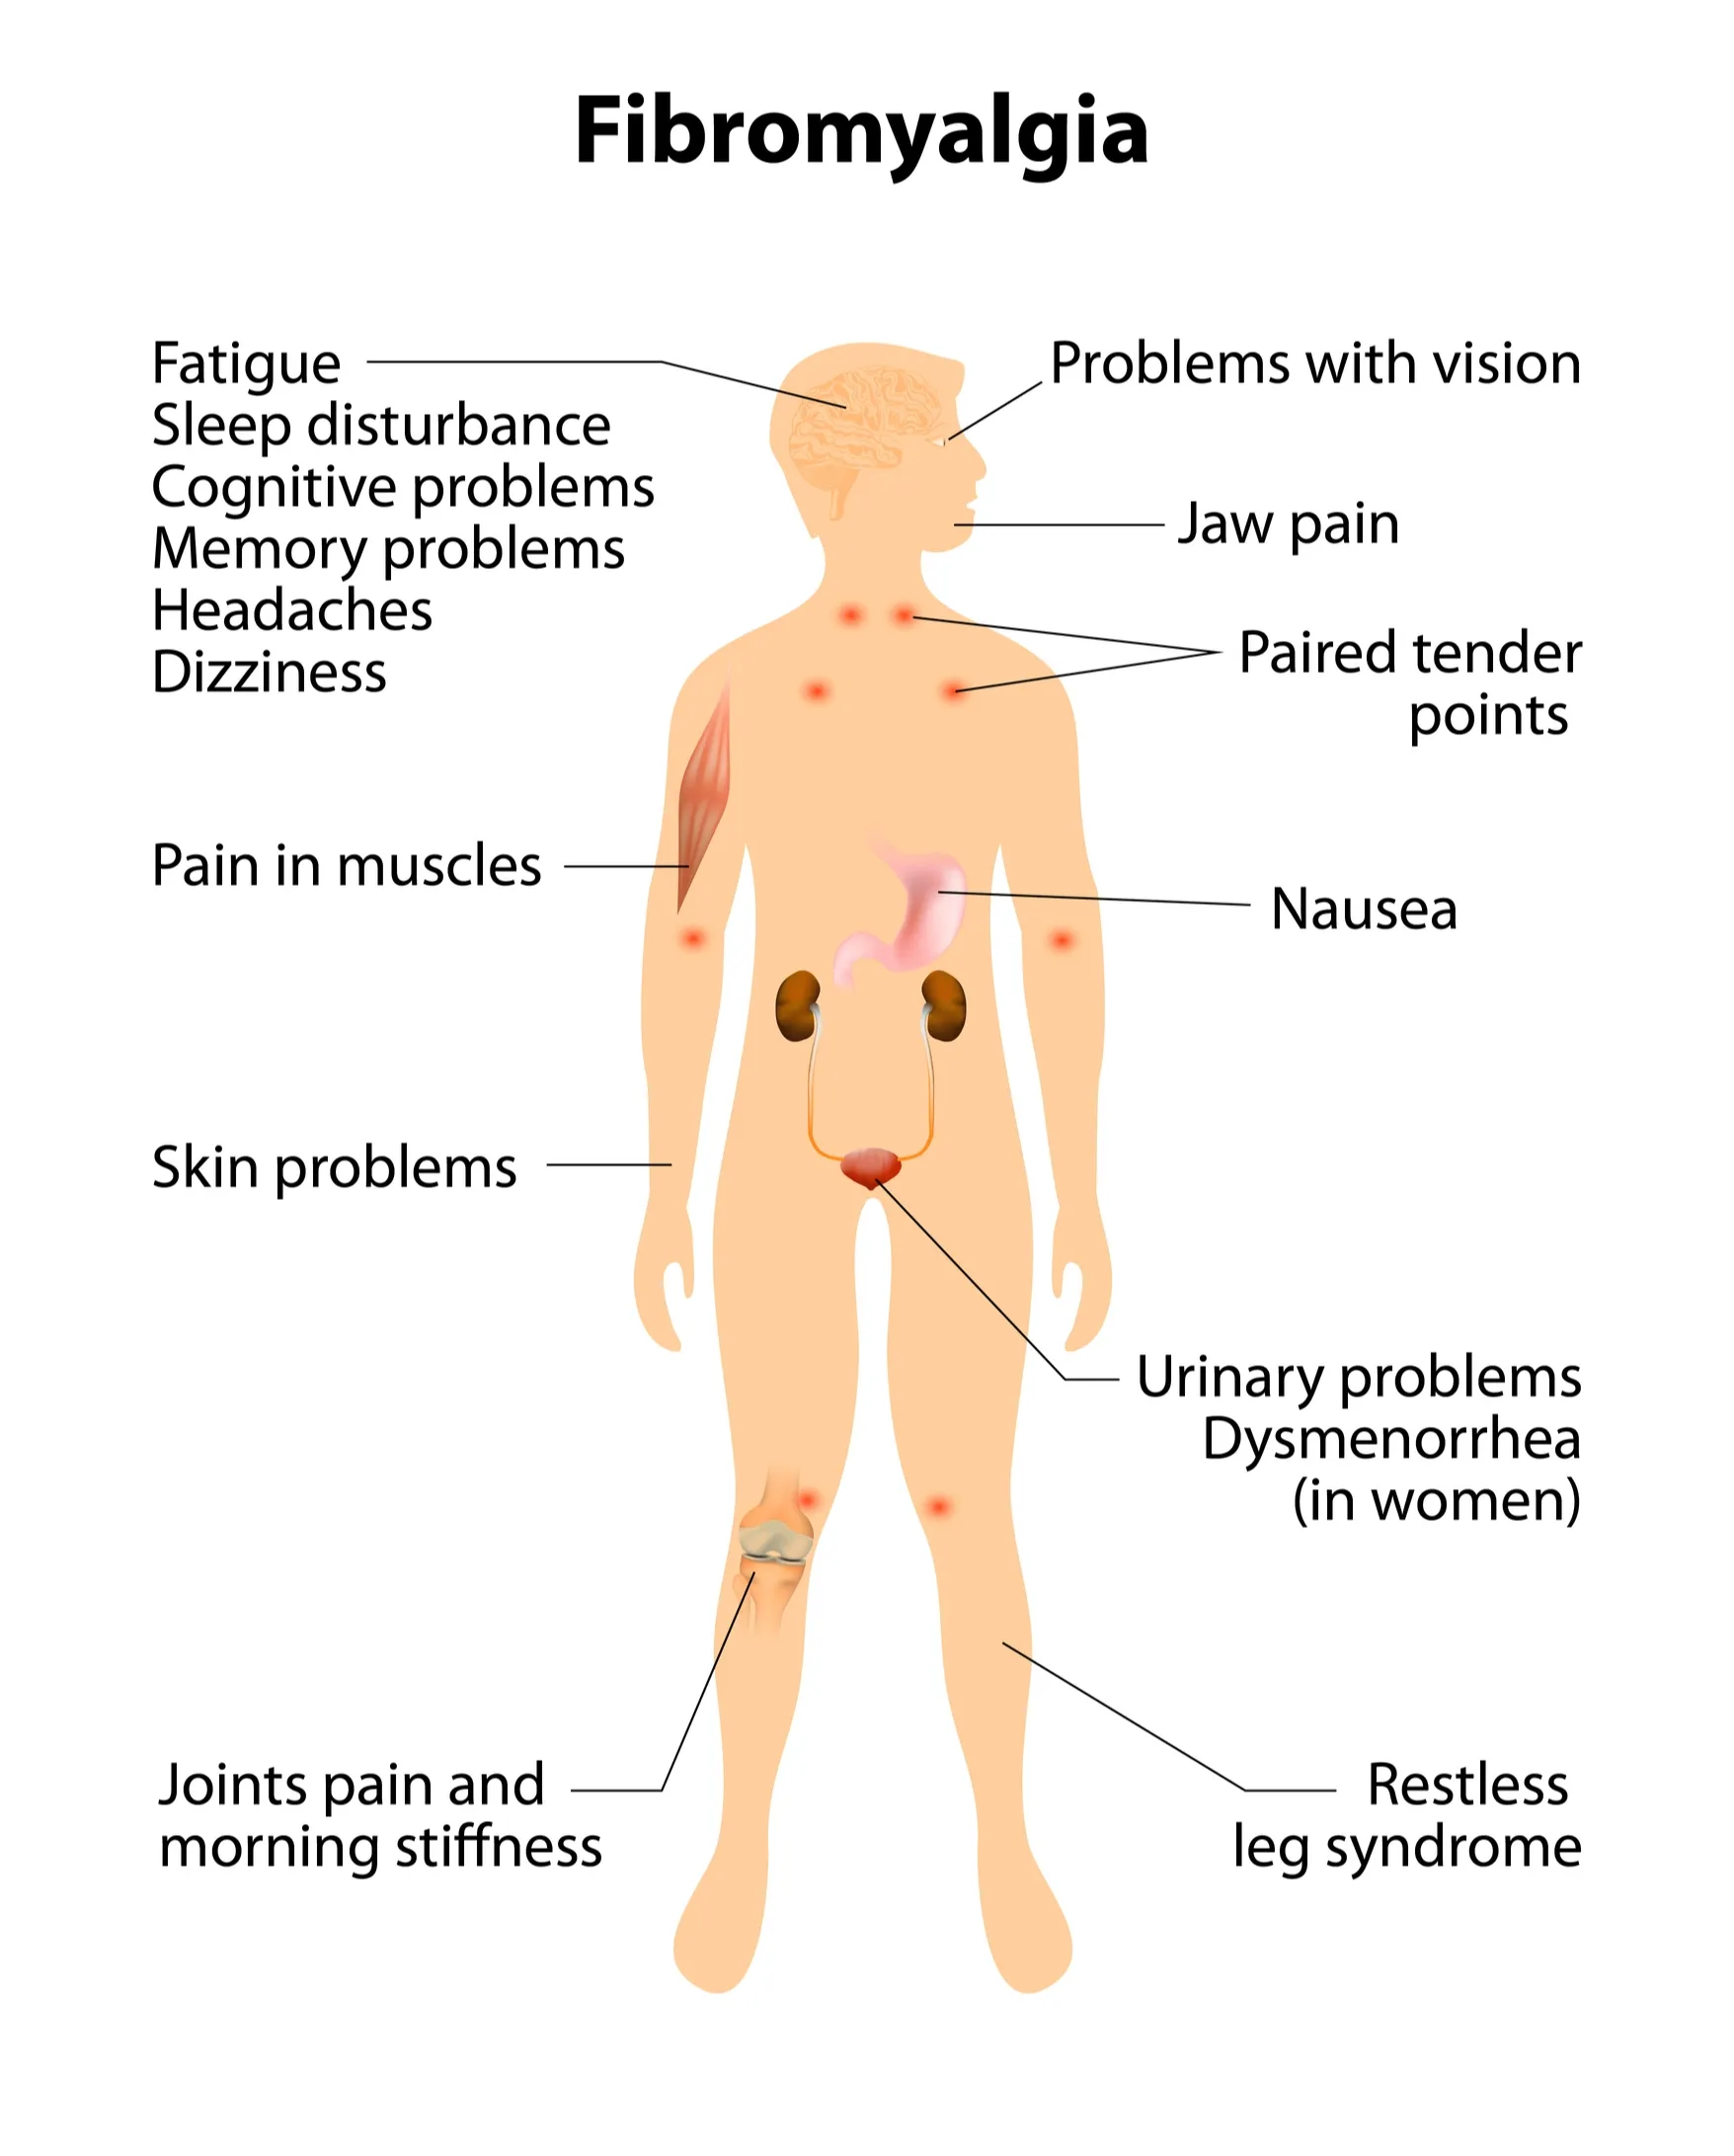 Fibromyalgia symptoms.